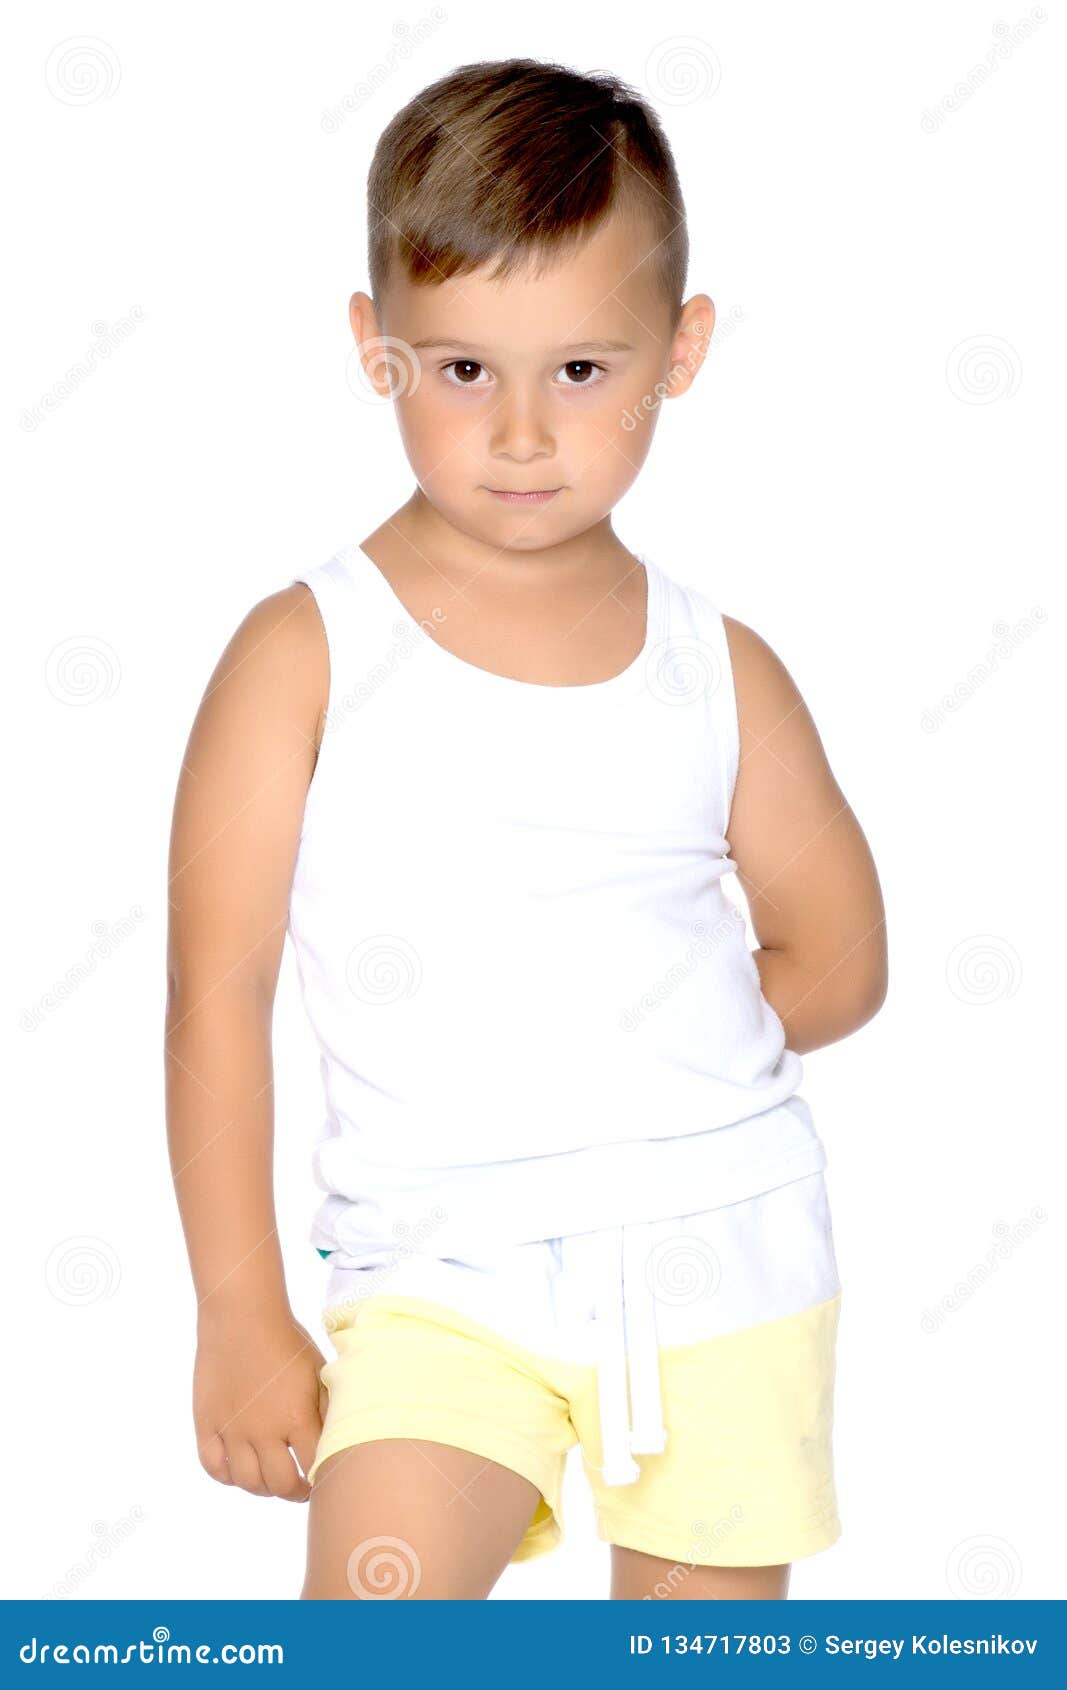 La Camiseta Blanca En Un Niño Pequeño Fotos, retratos, imágenes y  fotografía de archivo libres de derecho. Image 15976600